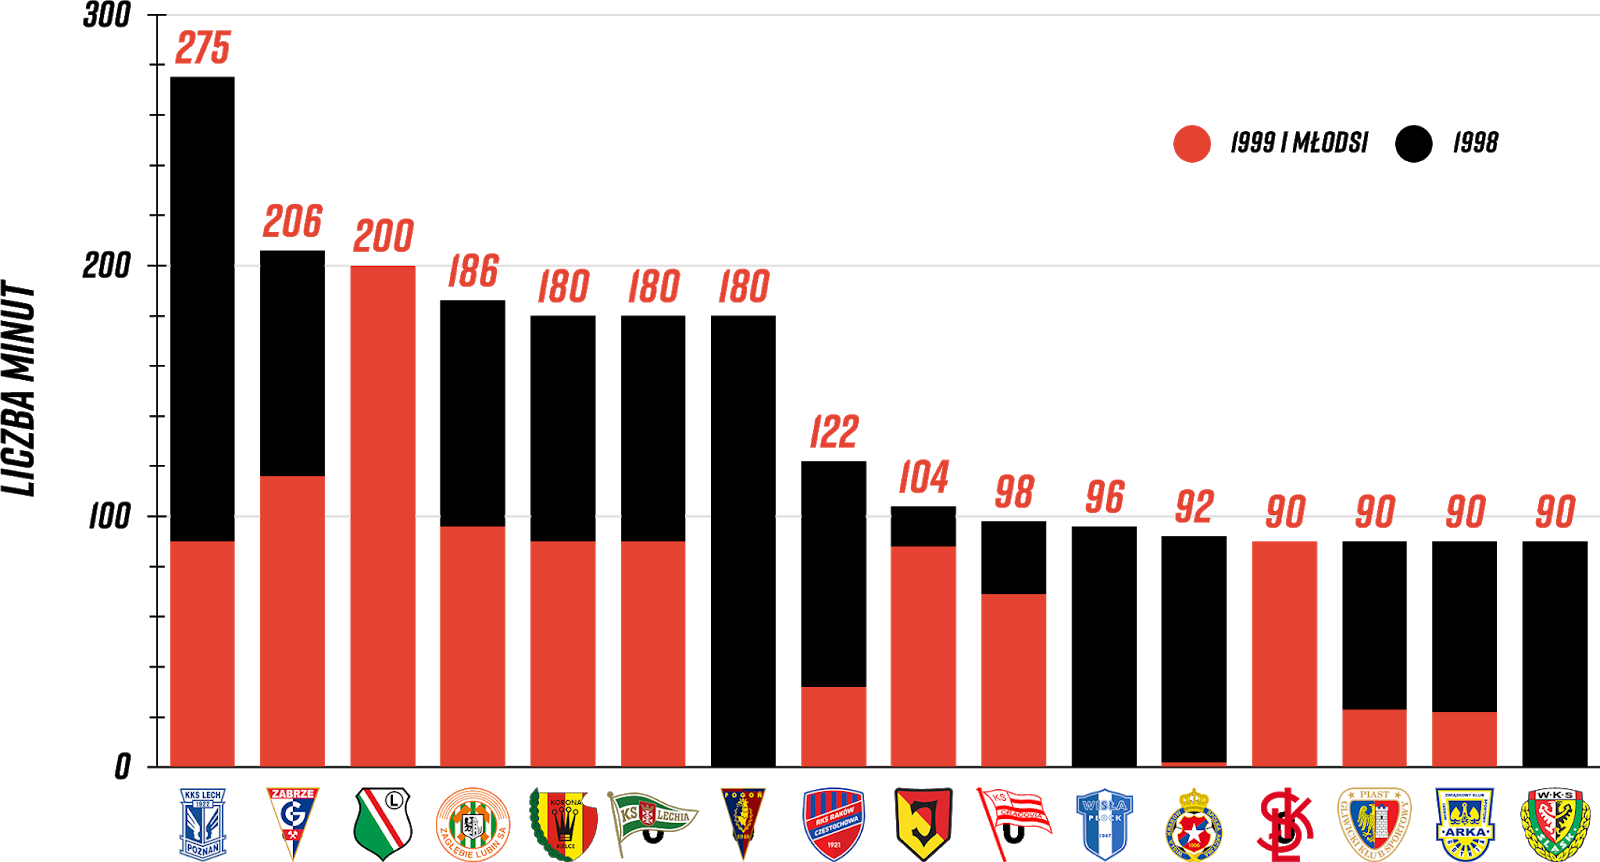 Klasyfikacja klubów pod względem rozegranych minut przez młodzieżowców w 7. kolejce PKO Ekstraklasy<br><br>Źródło: Opracowanie własne na podstawie ekstrastats.pl<br><br>graf. Bartosz Urban